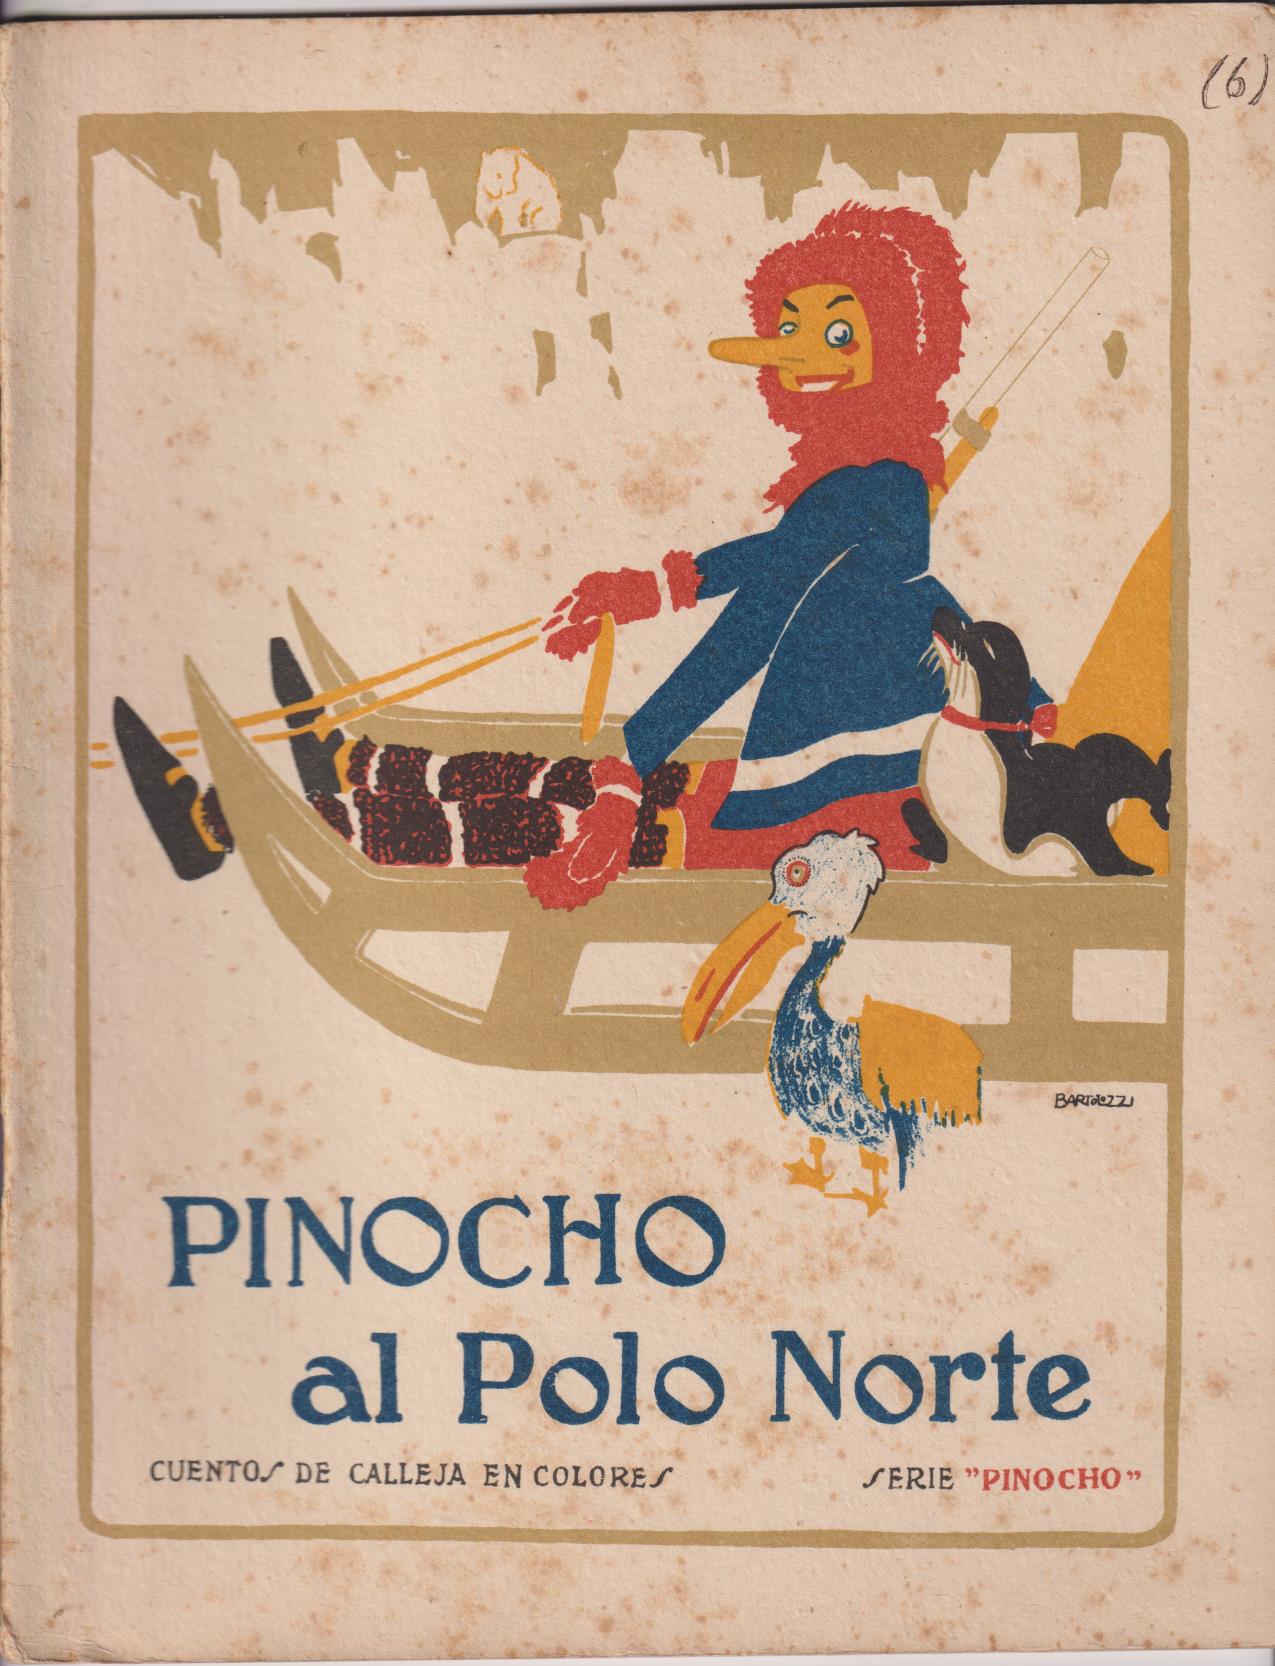 Pinocho nº 6. Pinocho al Polo Norte. 1ª Edición Calleja 1919. (28x22) 16 páginas MUY ESCASO